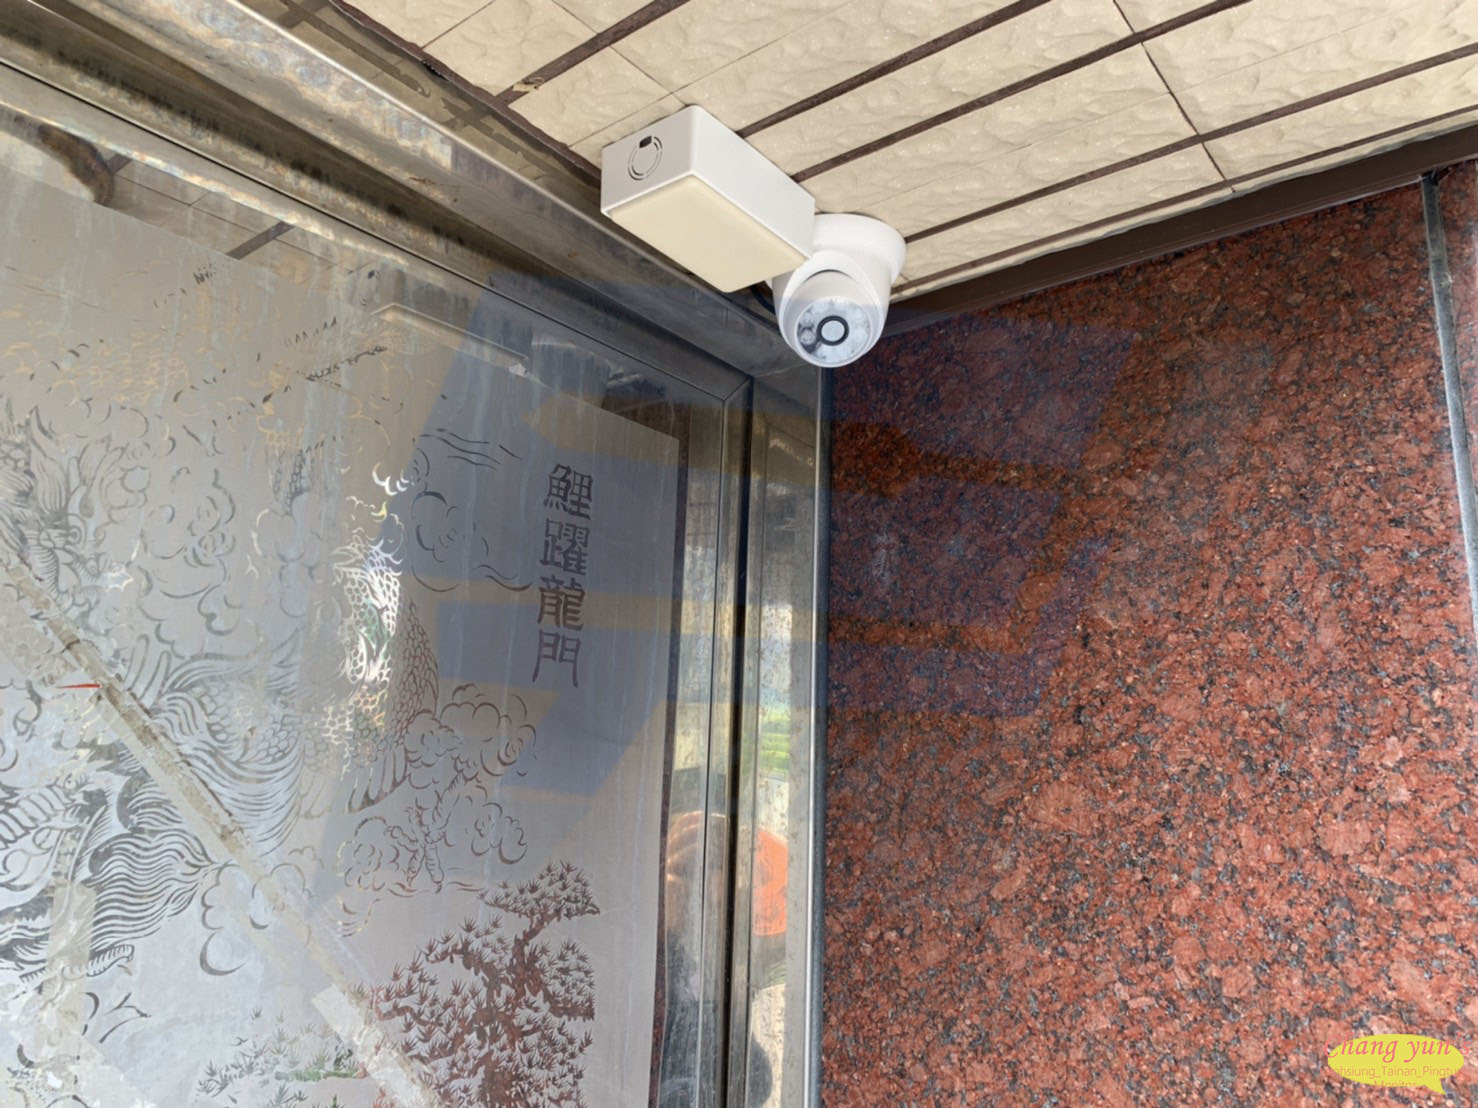 台南市新市區監視器安裝案例 監視系統推薦安裝廠商